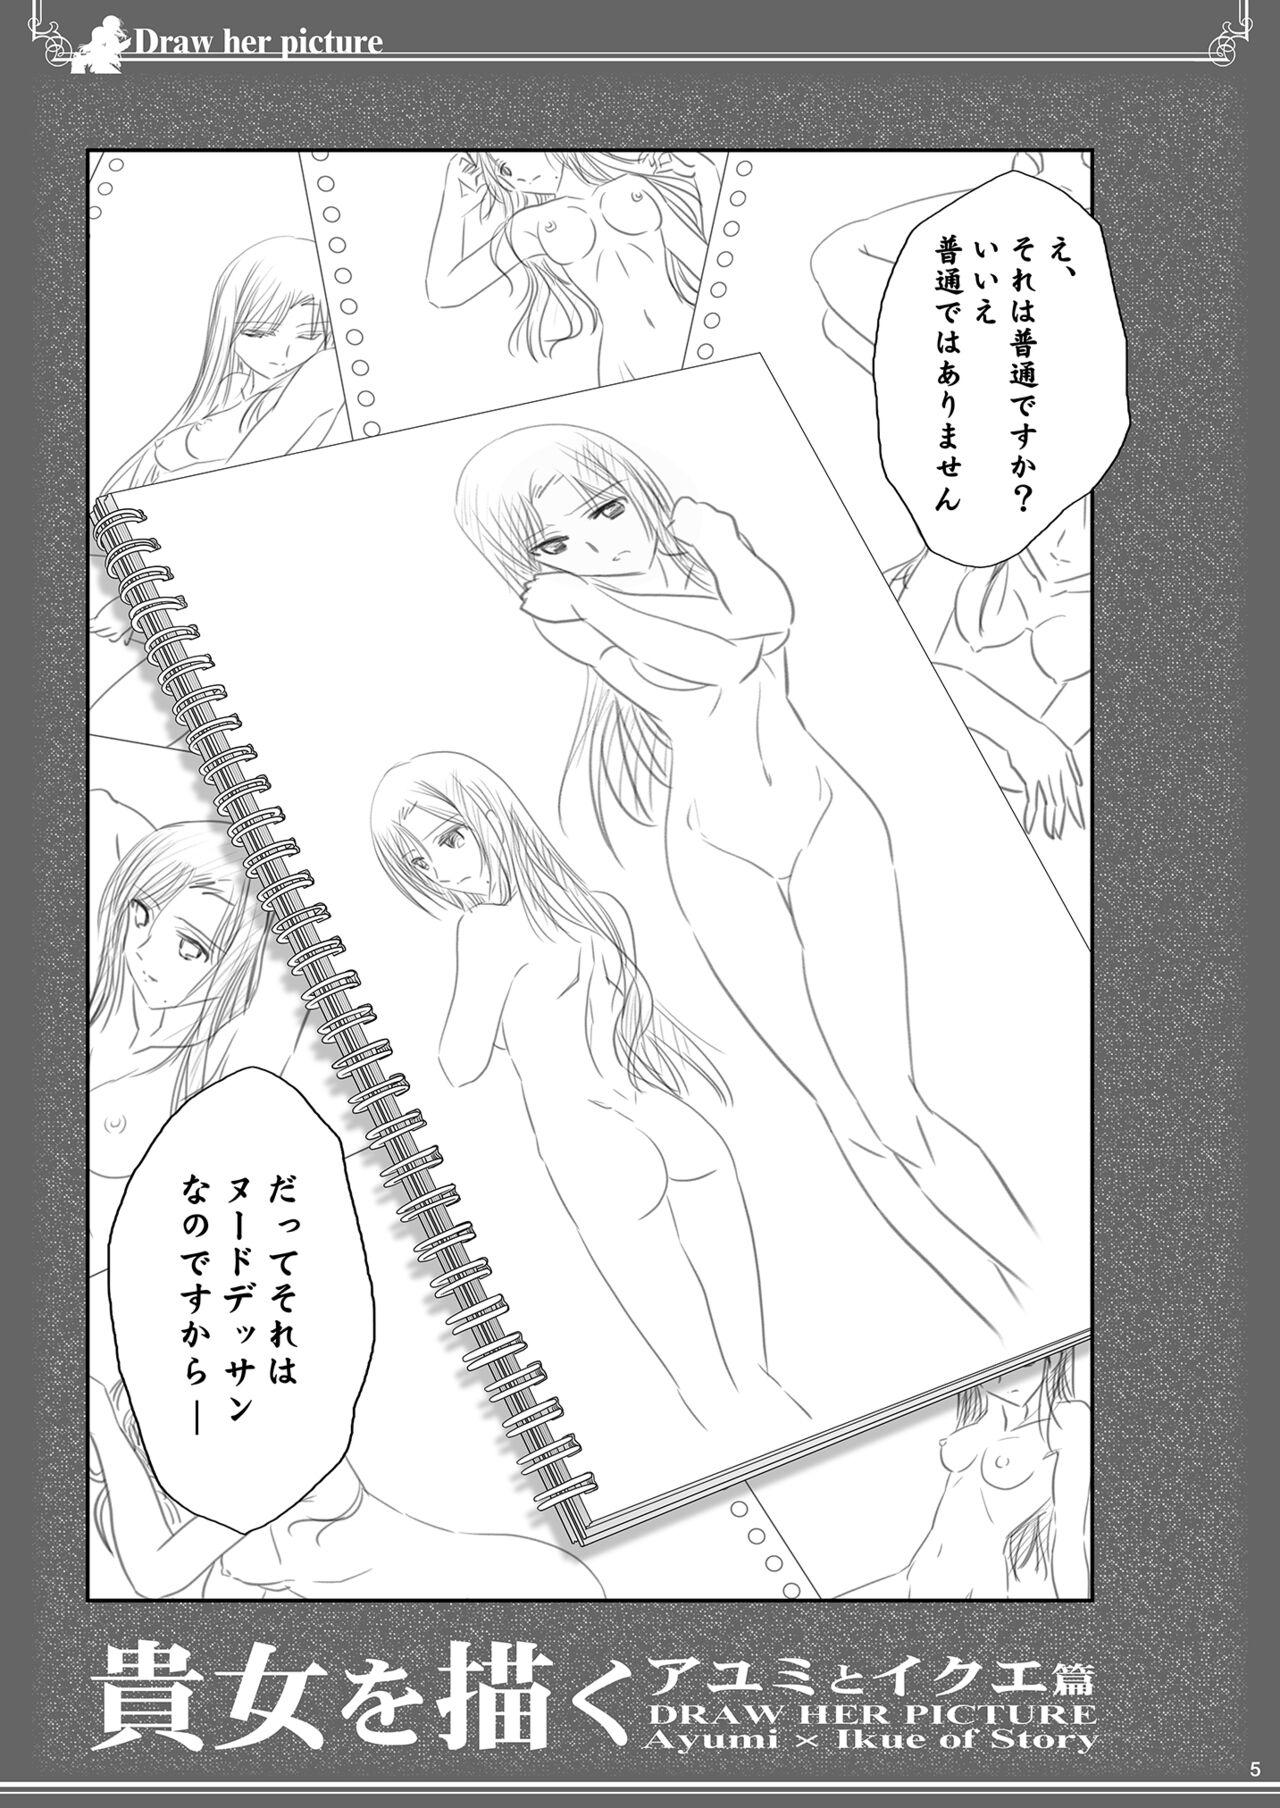 Free Fuck 貴女を描く アユミとイクエのエスケッチ - Original Cougar - Page 5